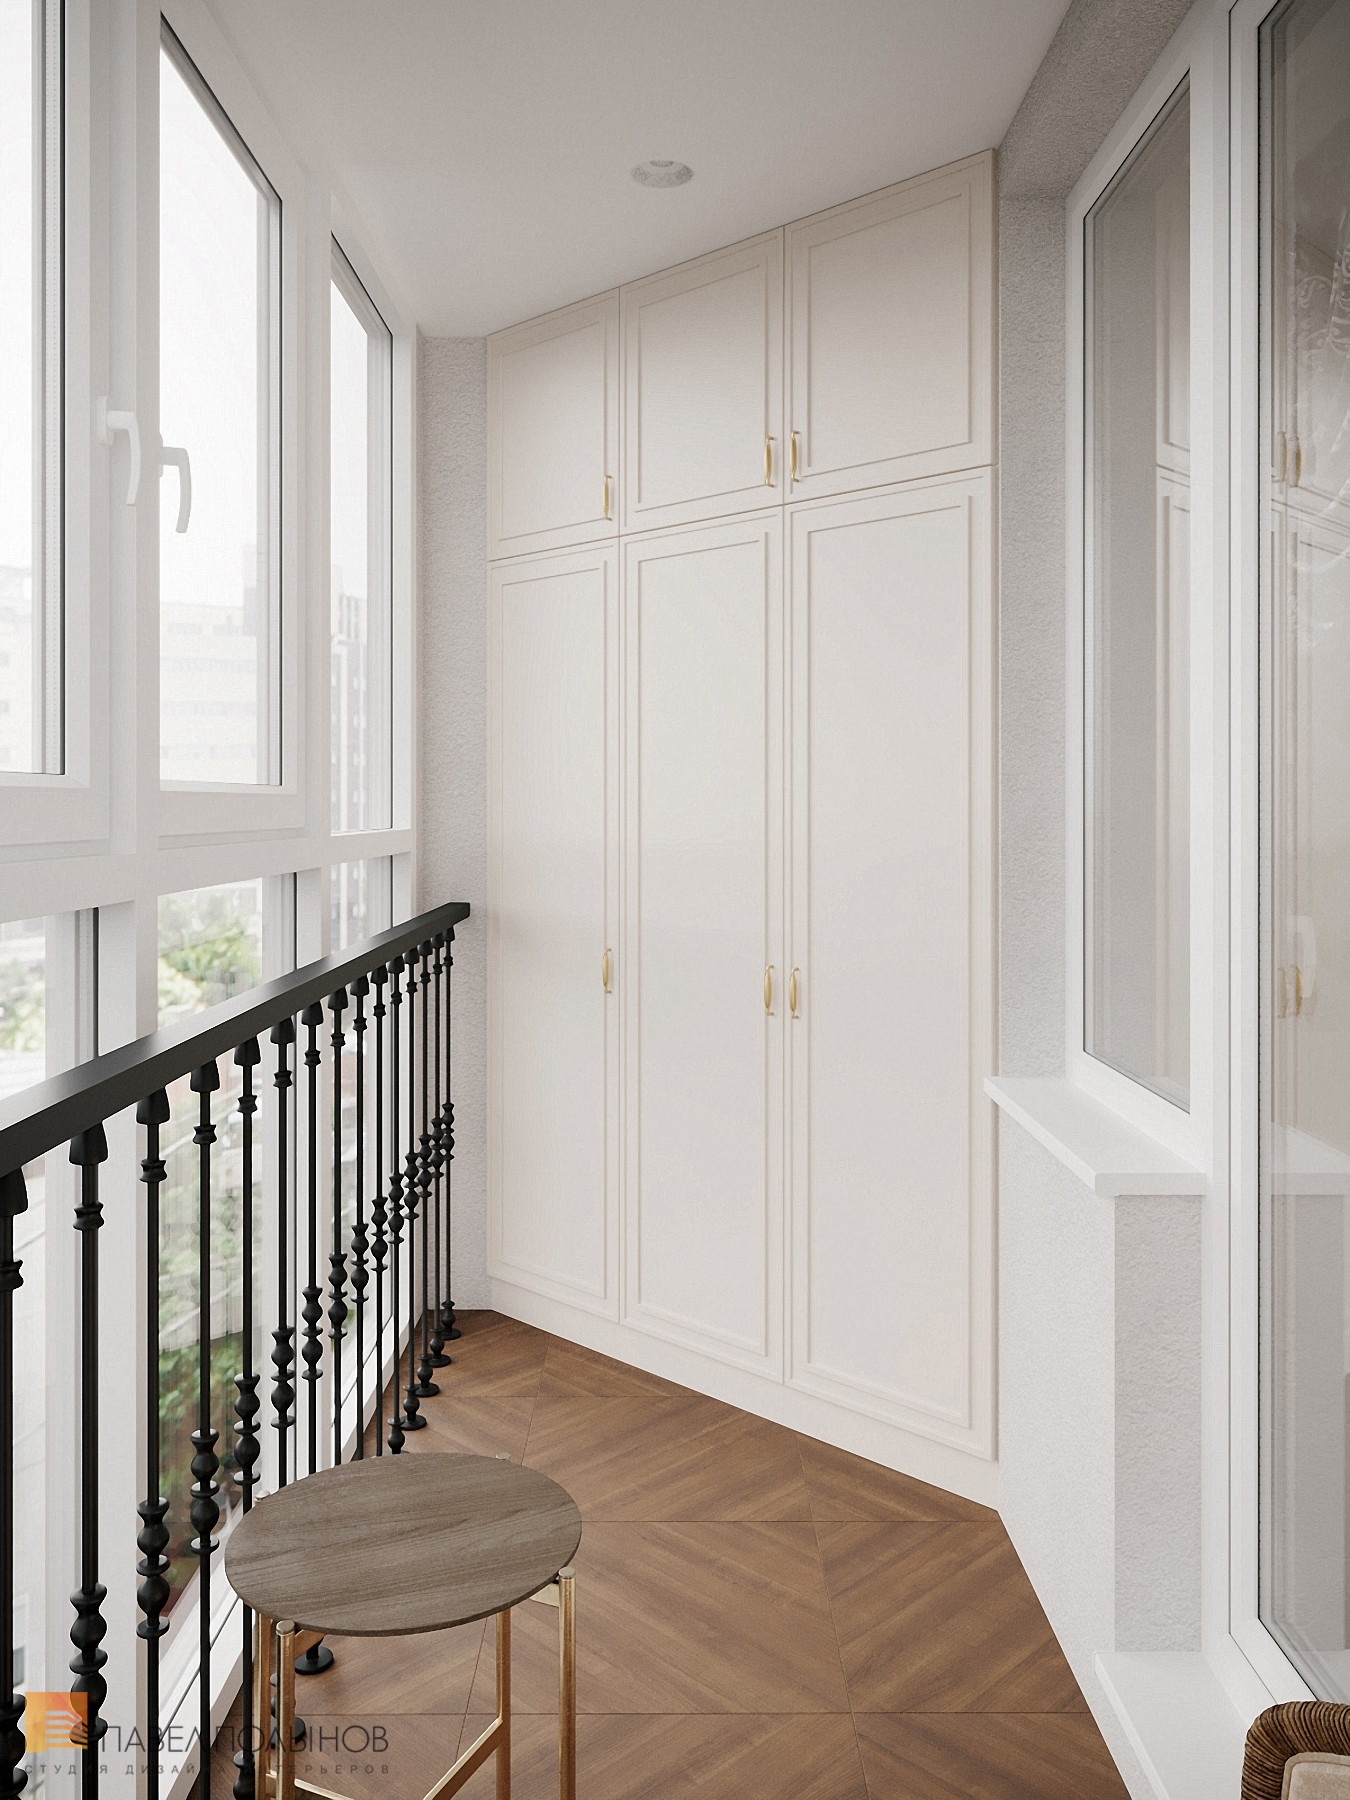 Фото дизайн балкона из проекта «Дизайн интерьера квартиры в классическом стиле, ЖК «Балтийская жемчужина», 95 кв.м.»